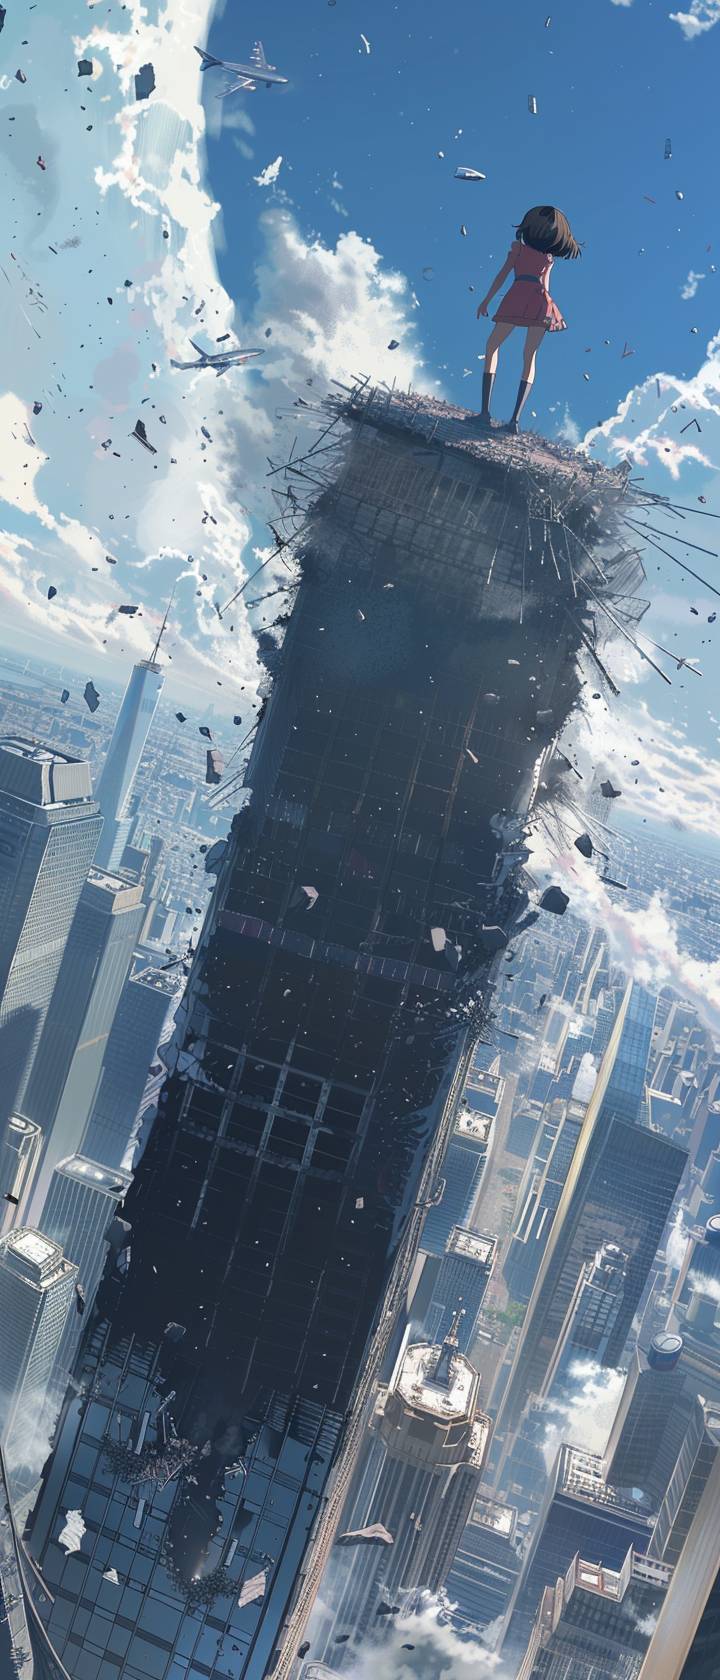 アニメの少女が、飛行機の衝突を受けた後に世界貿易センター北塔の上に立ち、倒れる様子を見つめています。